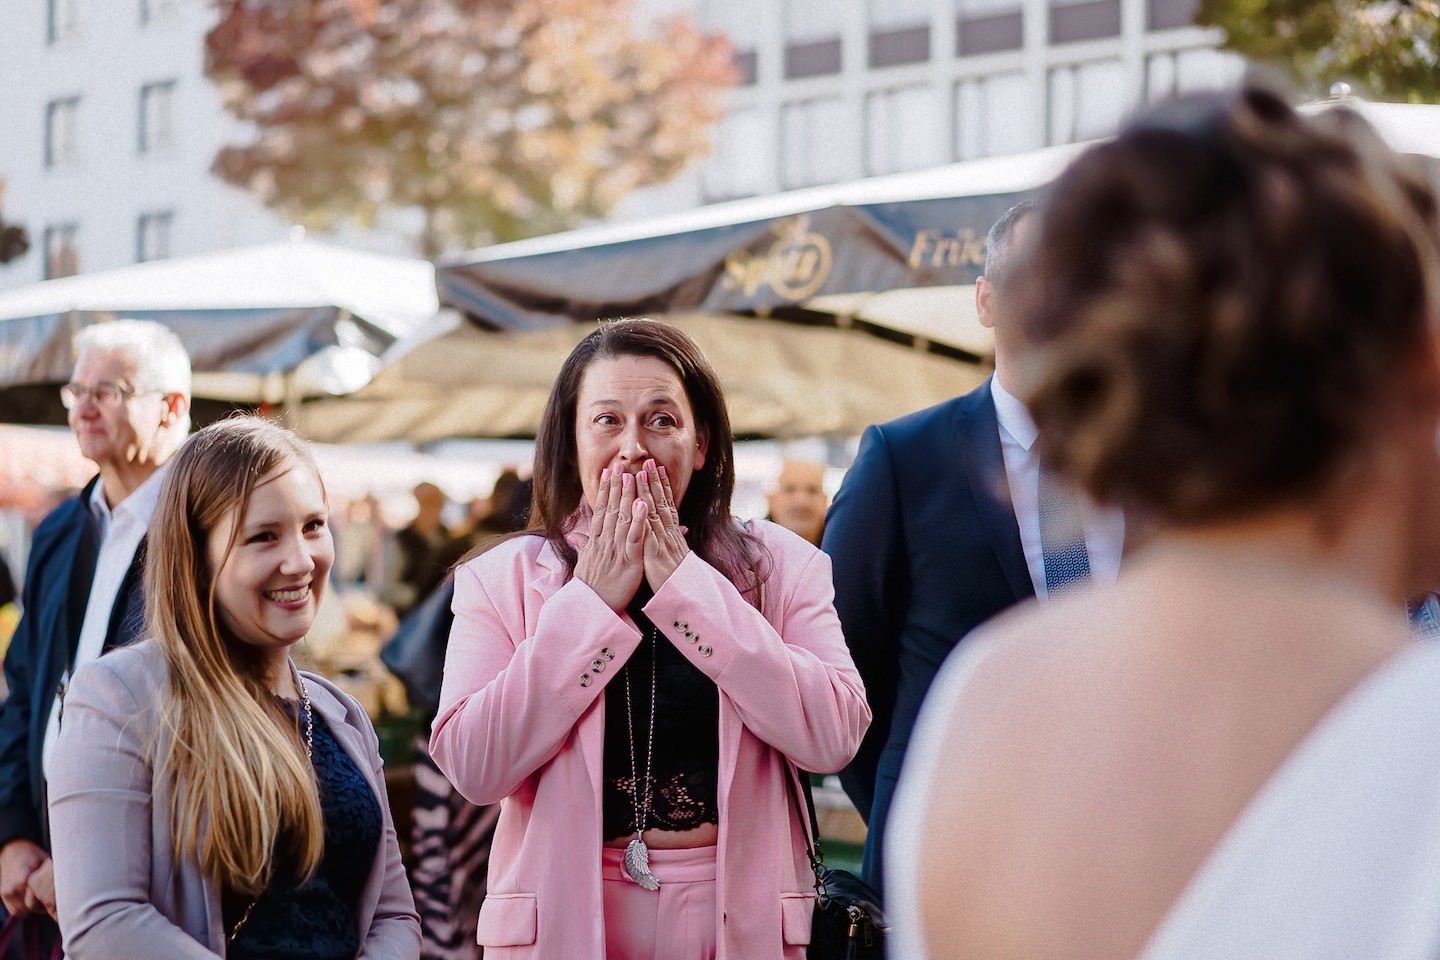 Reaktion der Gäste auf die Braut am Marktplatz